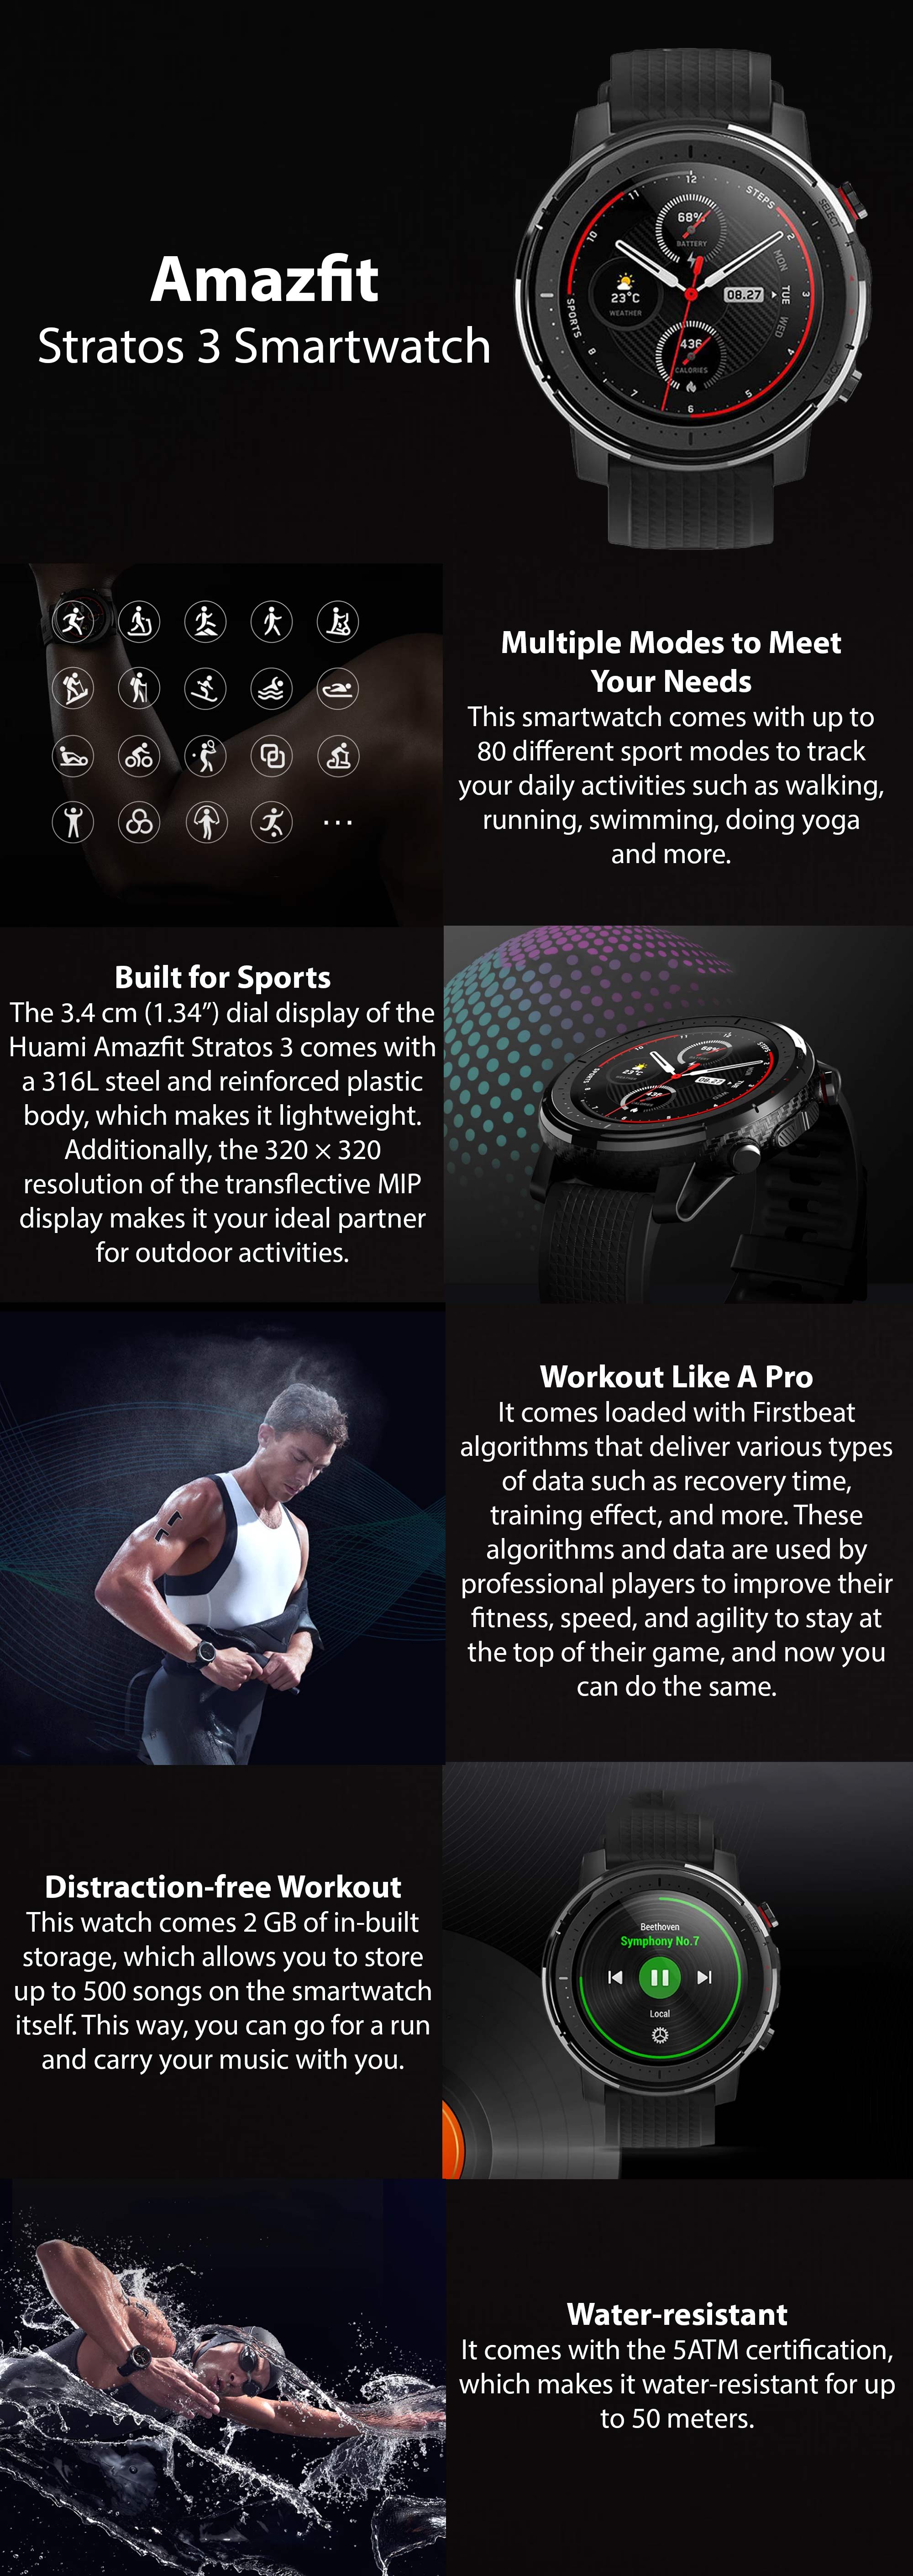 Amazfit Stratos 3 Smartwatch Sports Watch with 1.34 Inch MIP